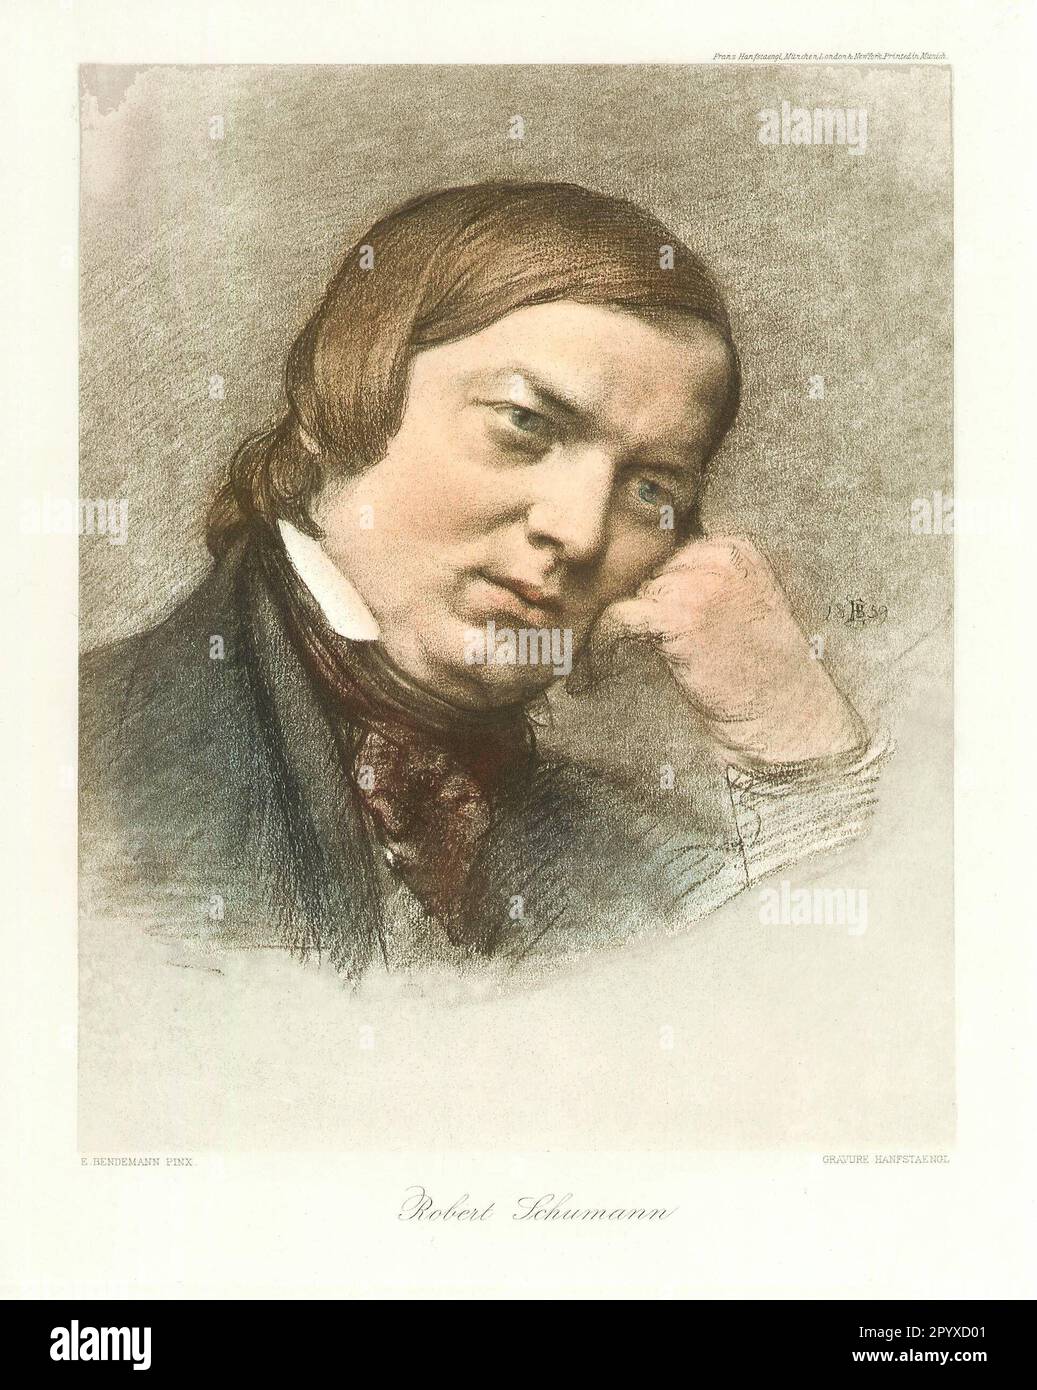 Robert German (1810-1856), compositeur allemand. Dessin de E. Bendemann, en date du 1859. Photo: Heliogravure, Corpus Imaginum, Collection Hanfstaengl. Banque D'Images